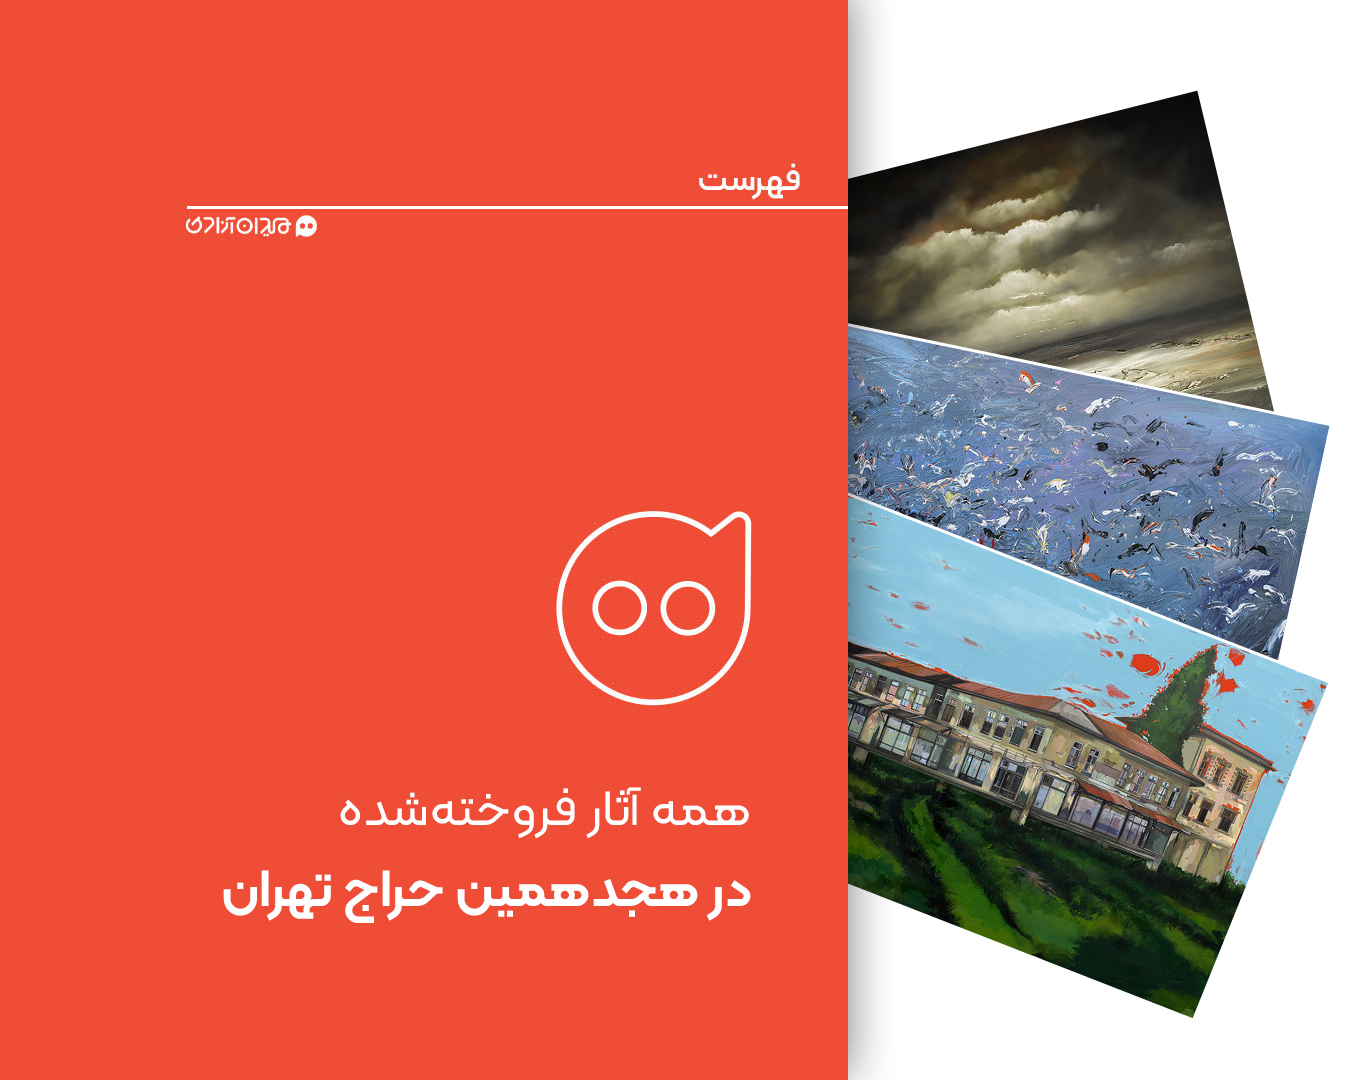 فهرست: همه آثار فروخته شده در هجدهمین حراج تهران + تصاویر و گزارشی از حاشیه‌ها